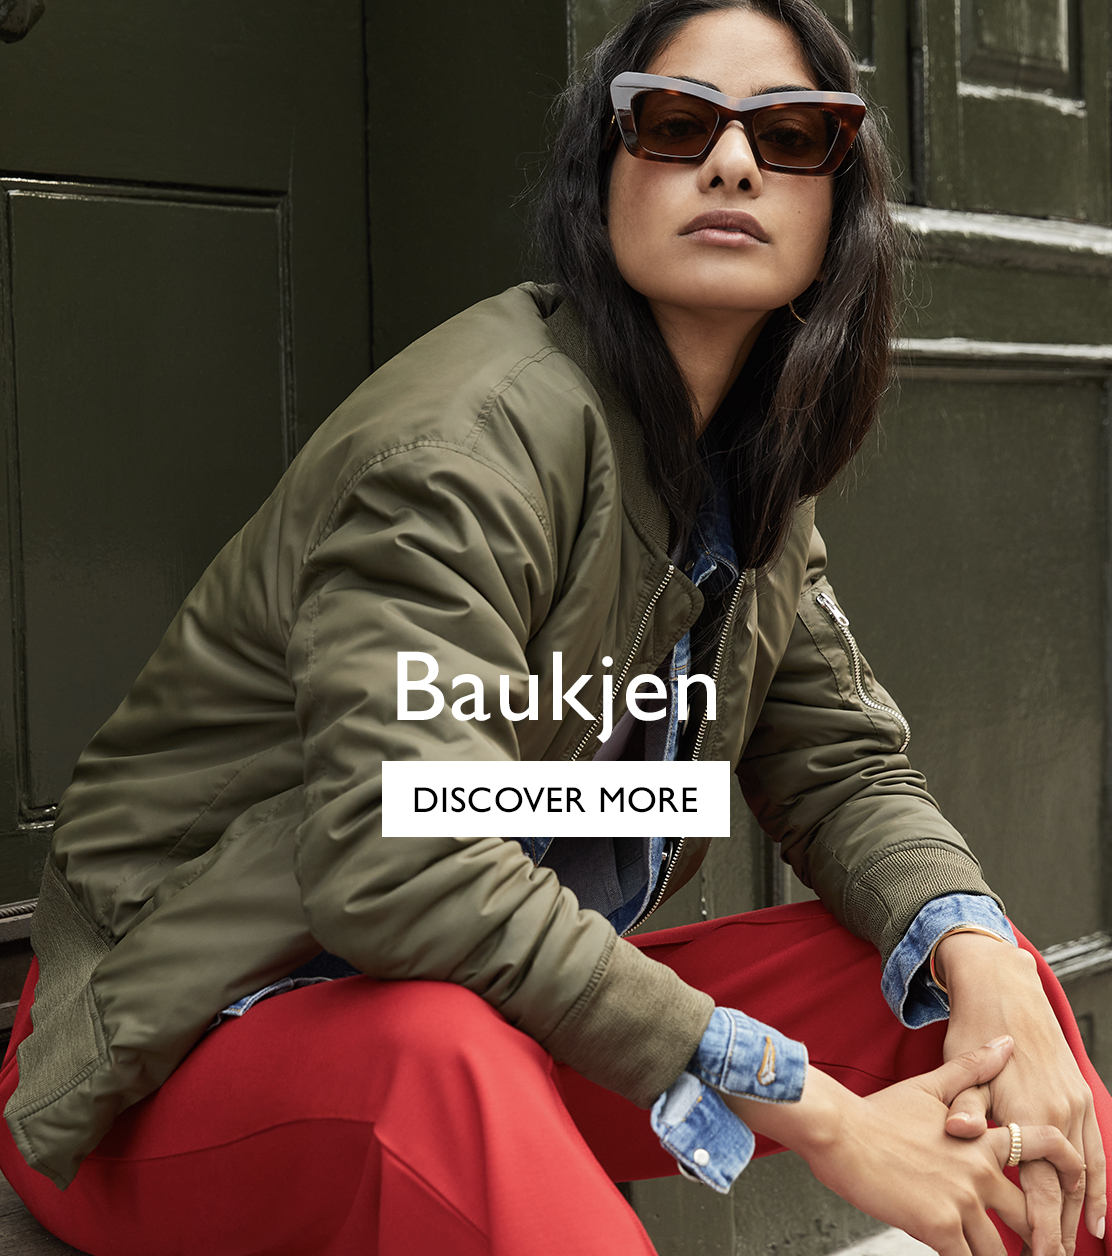 Discover Baukjen